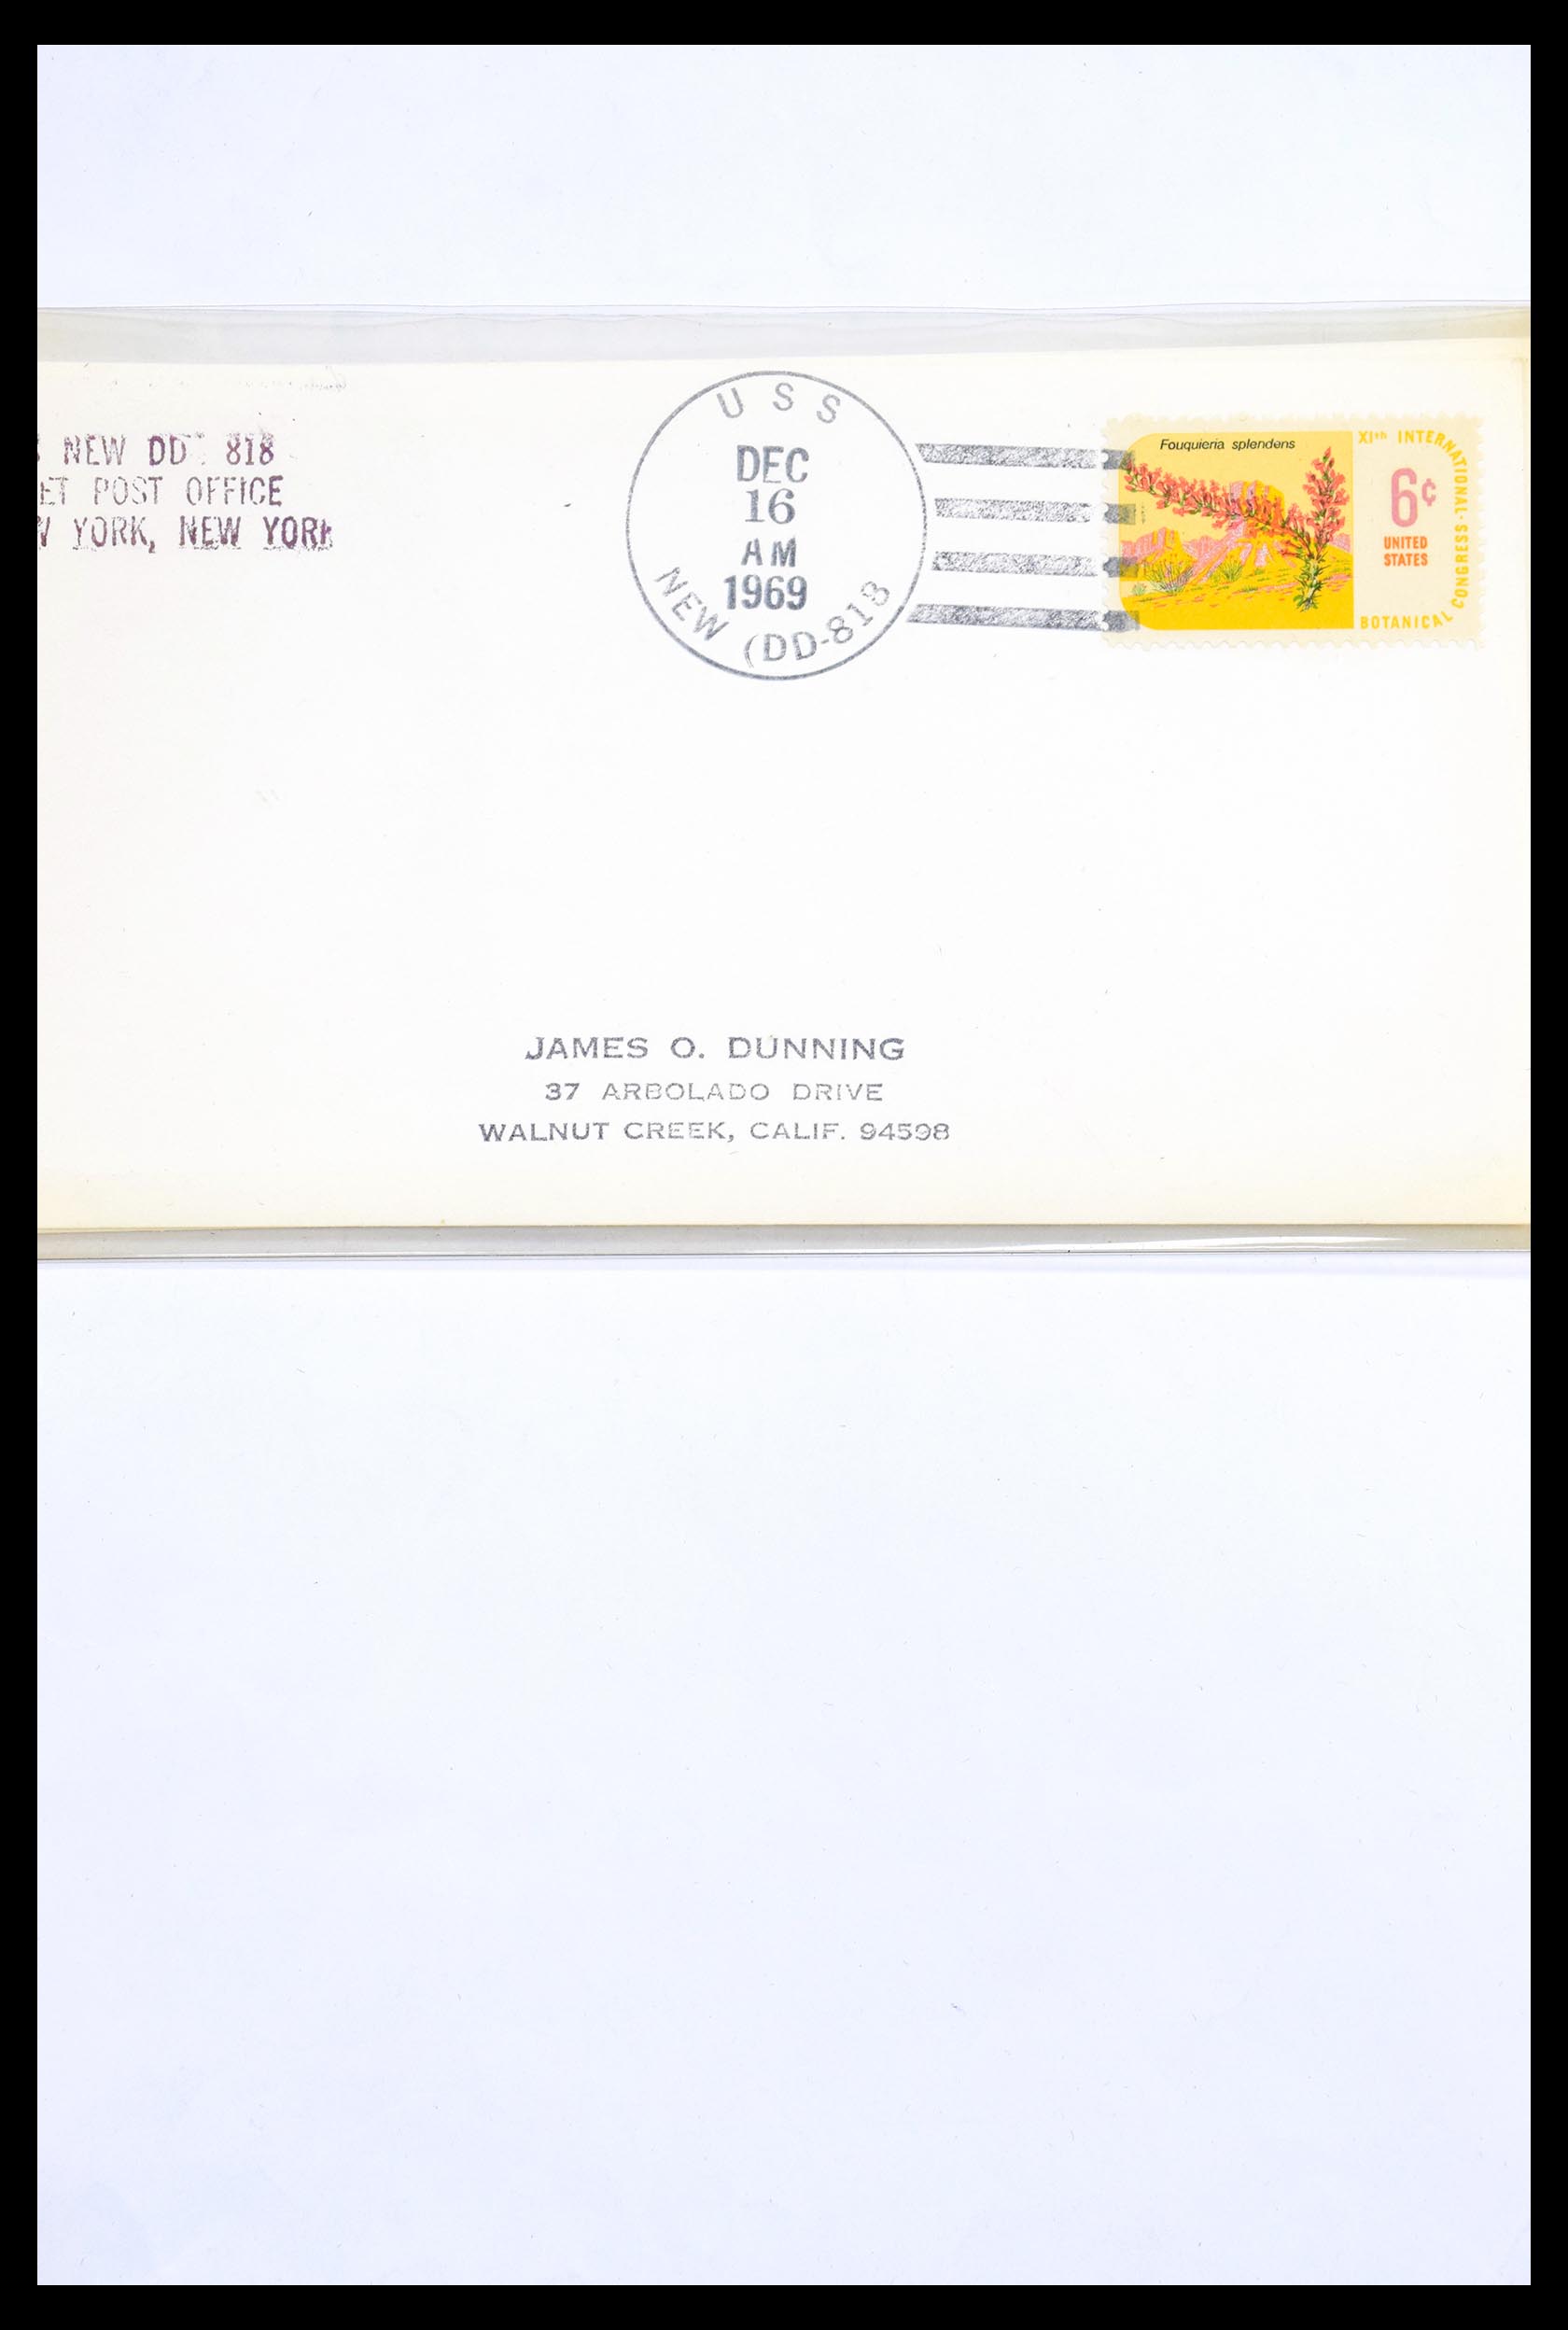 30341 296 - 30341 USA scheepspost brieven 1930-1970.